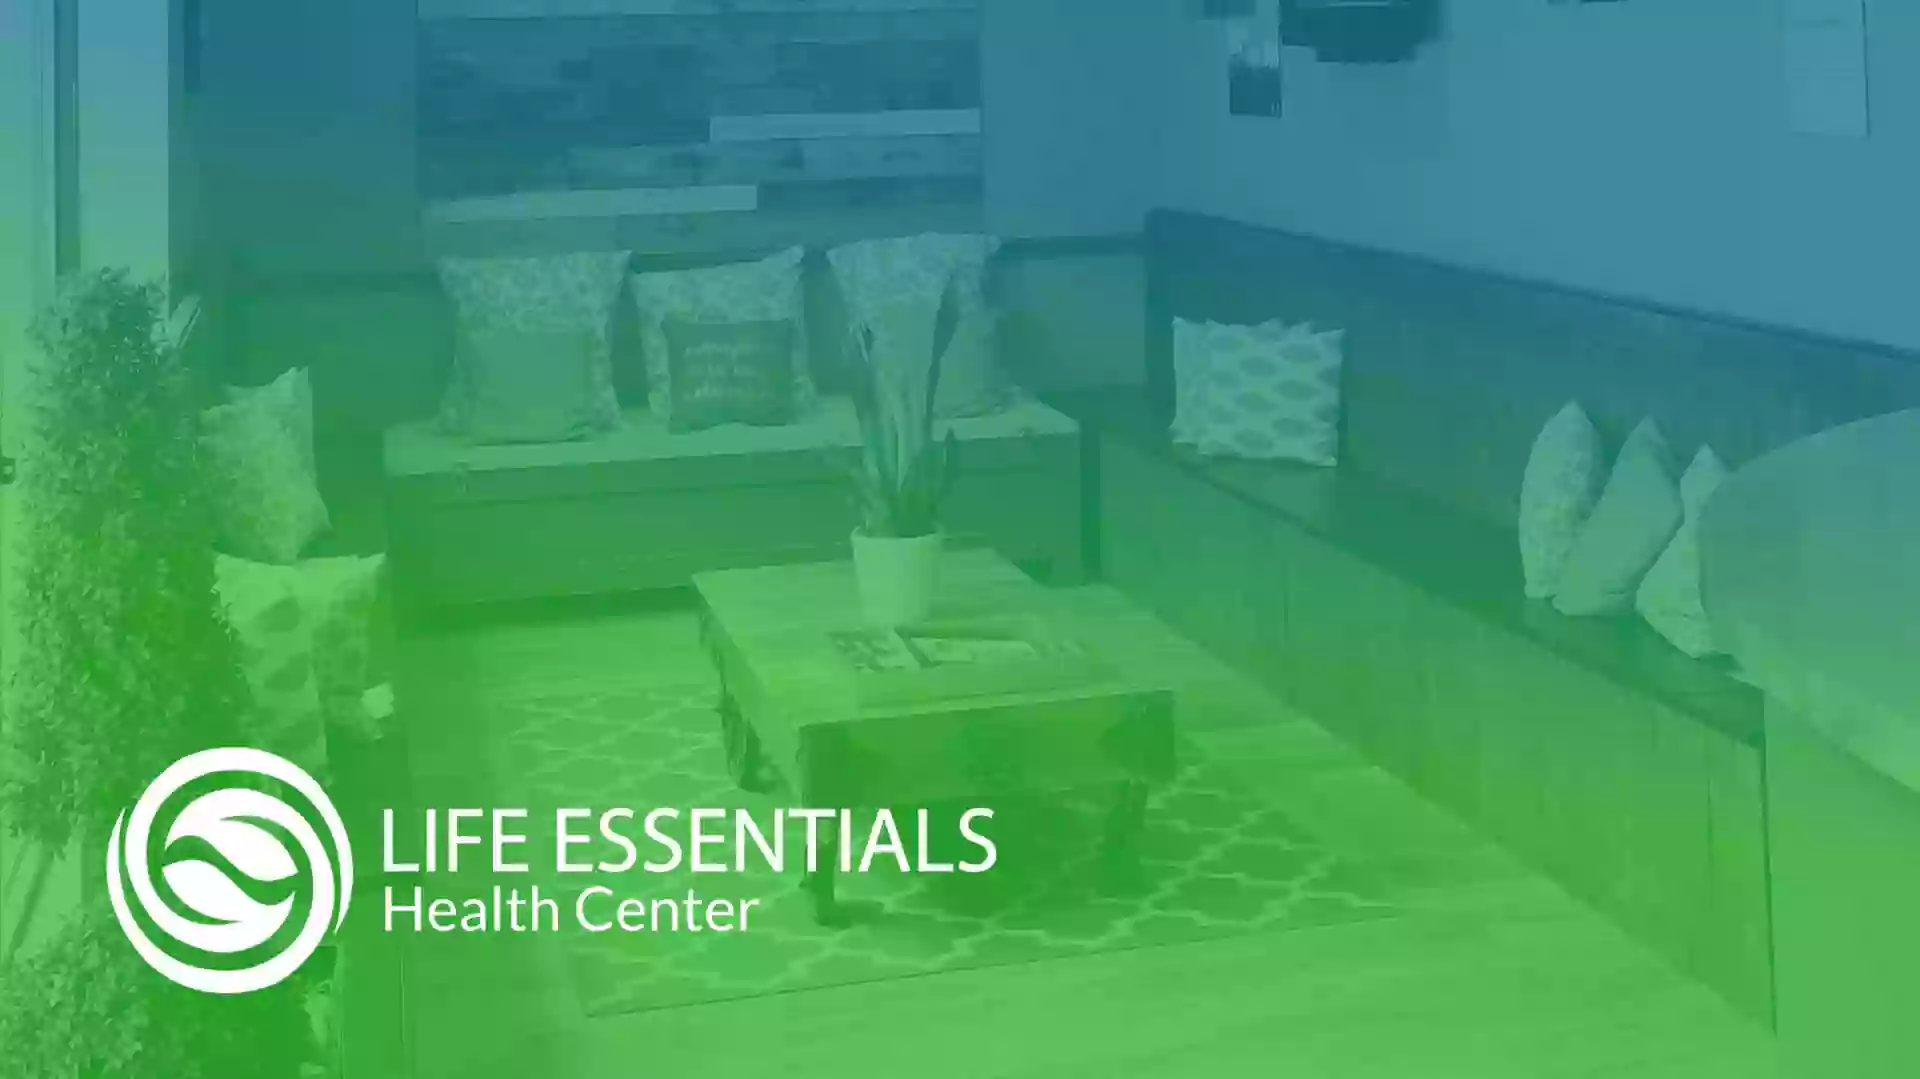 Life Essentials Health Center